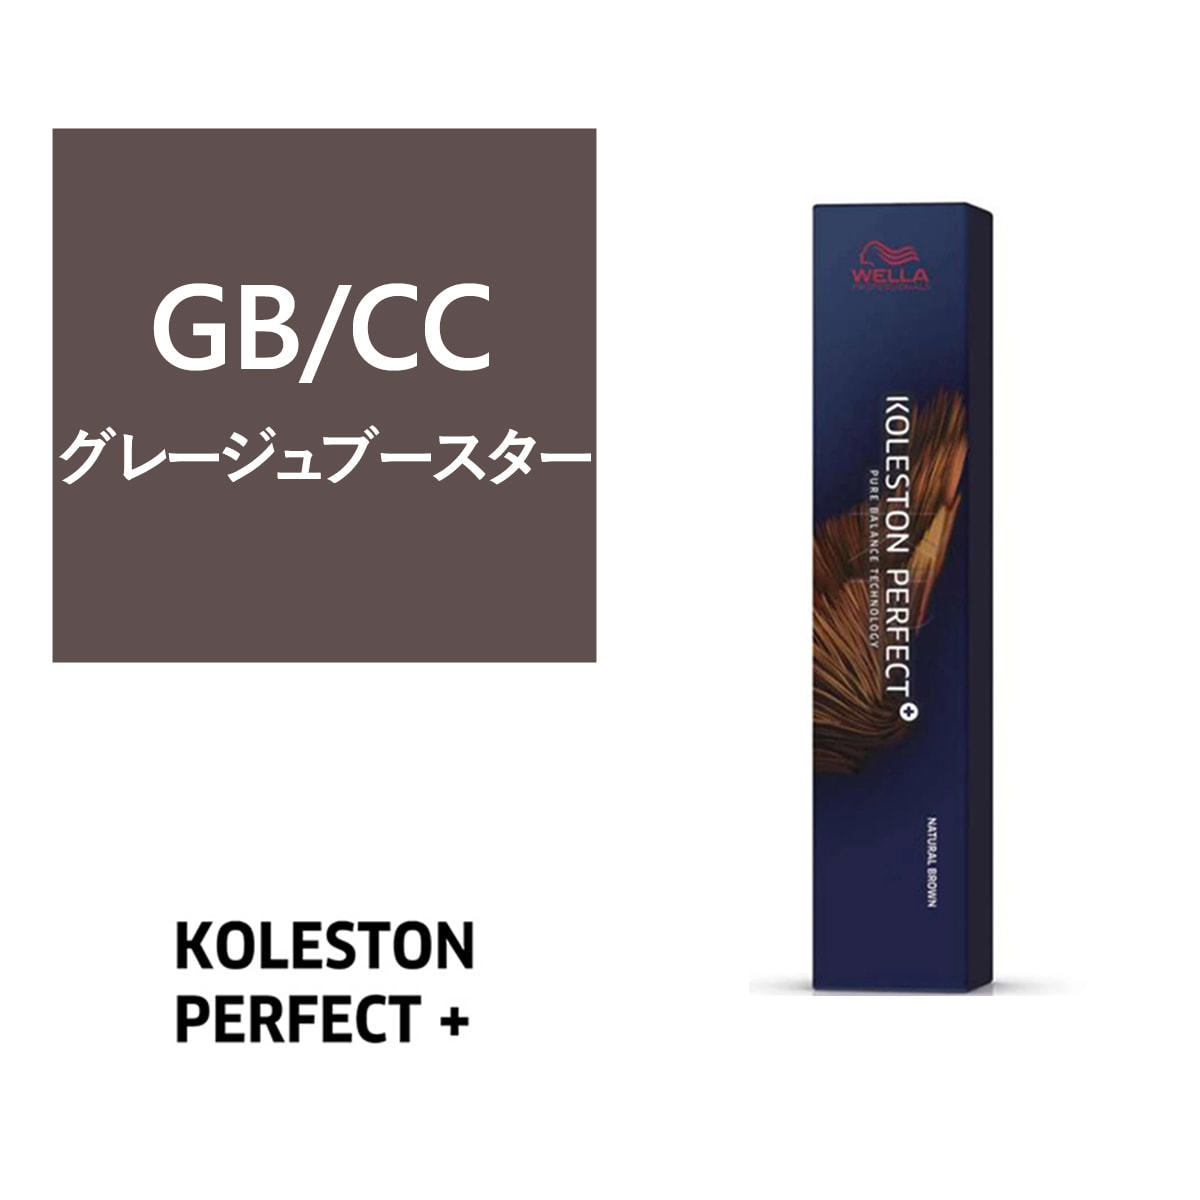 コレストンパーフェクトプラス GB/CC（グレージュブースター）80g《グレイファッションカラー》【医薬部外品】の卸・通販 | ビューティガレージ